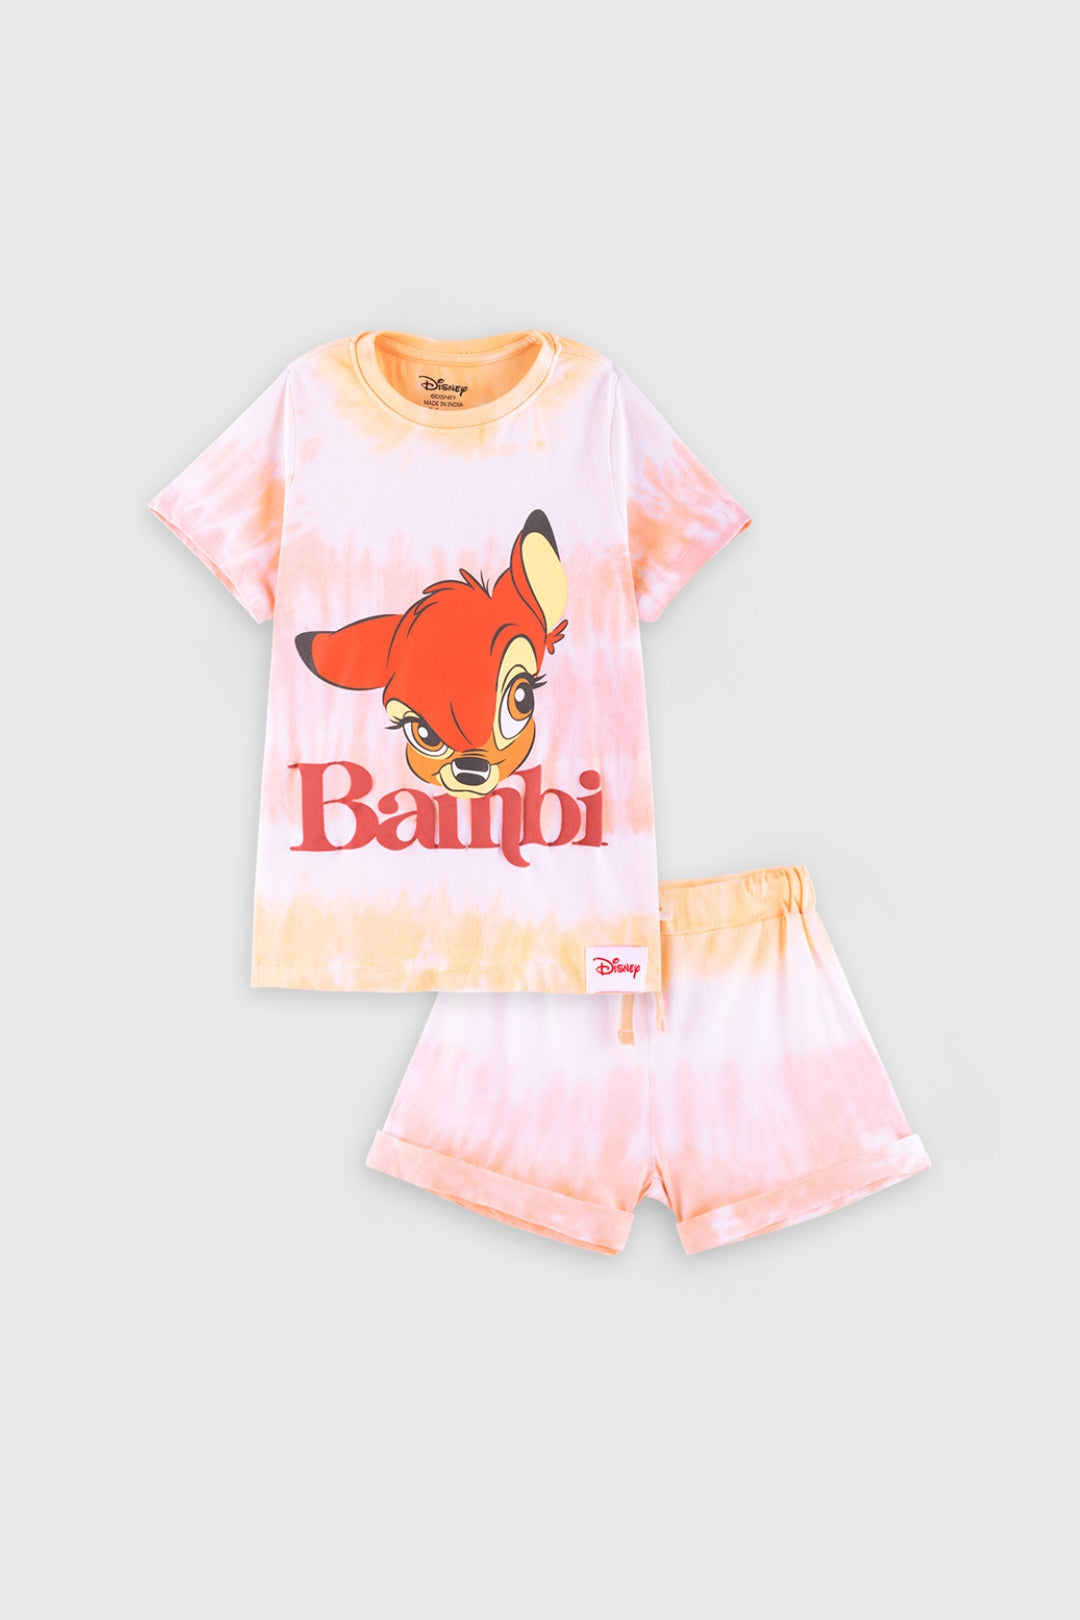 Disney Bambi Classic Tie & Dye Shorts Set